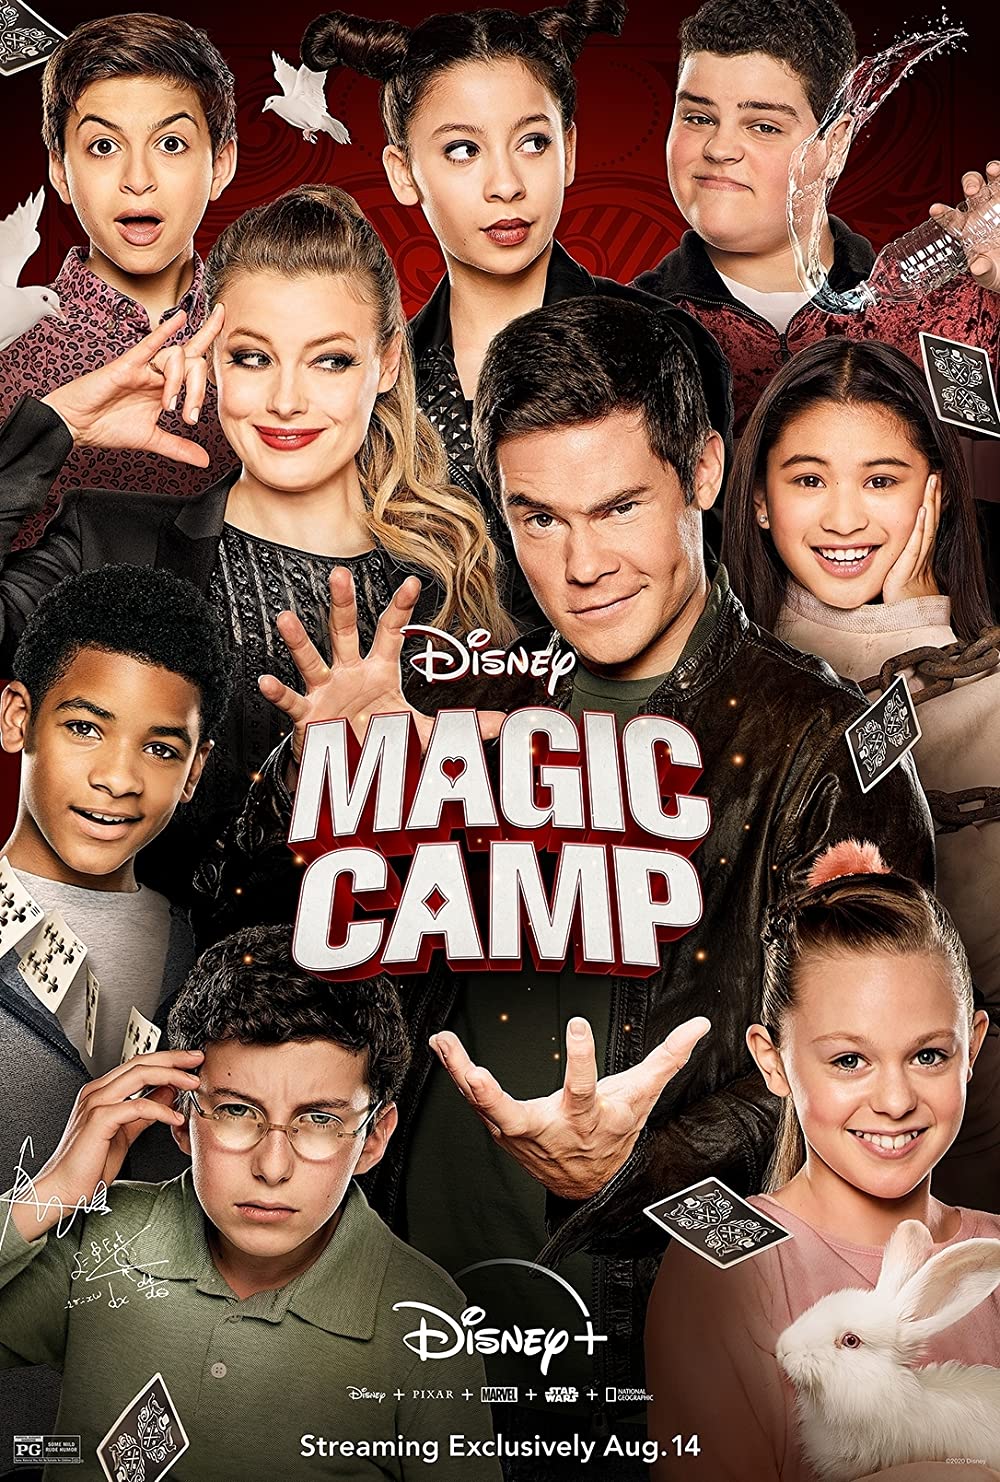 Filmbeschreibung zu Magic Camp